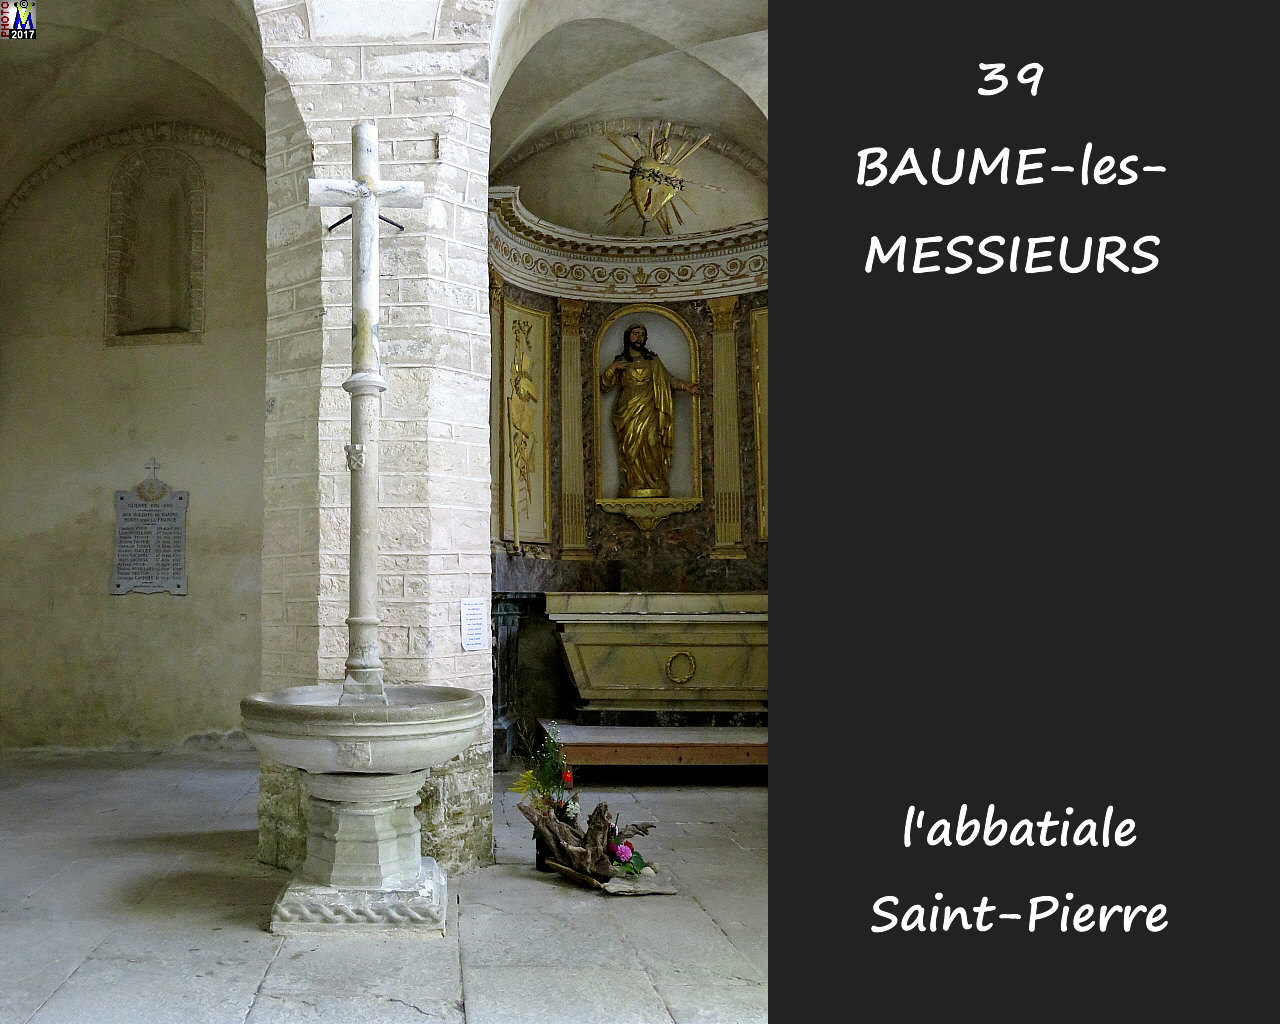 39BAUME-LES-MESSIEURS_abbatiale_276.jpg